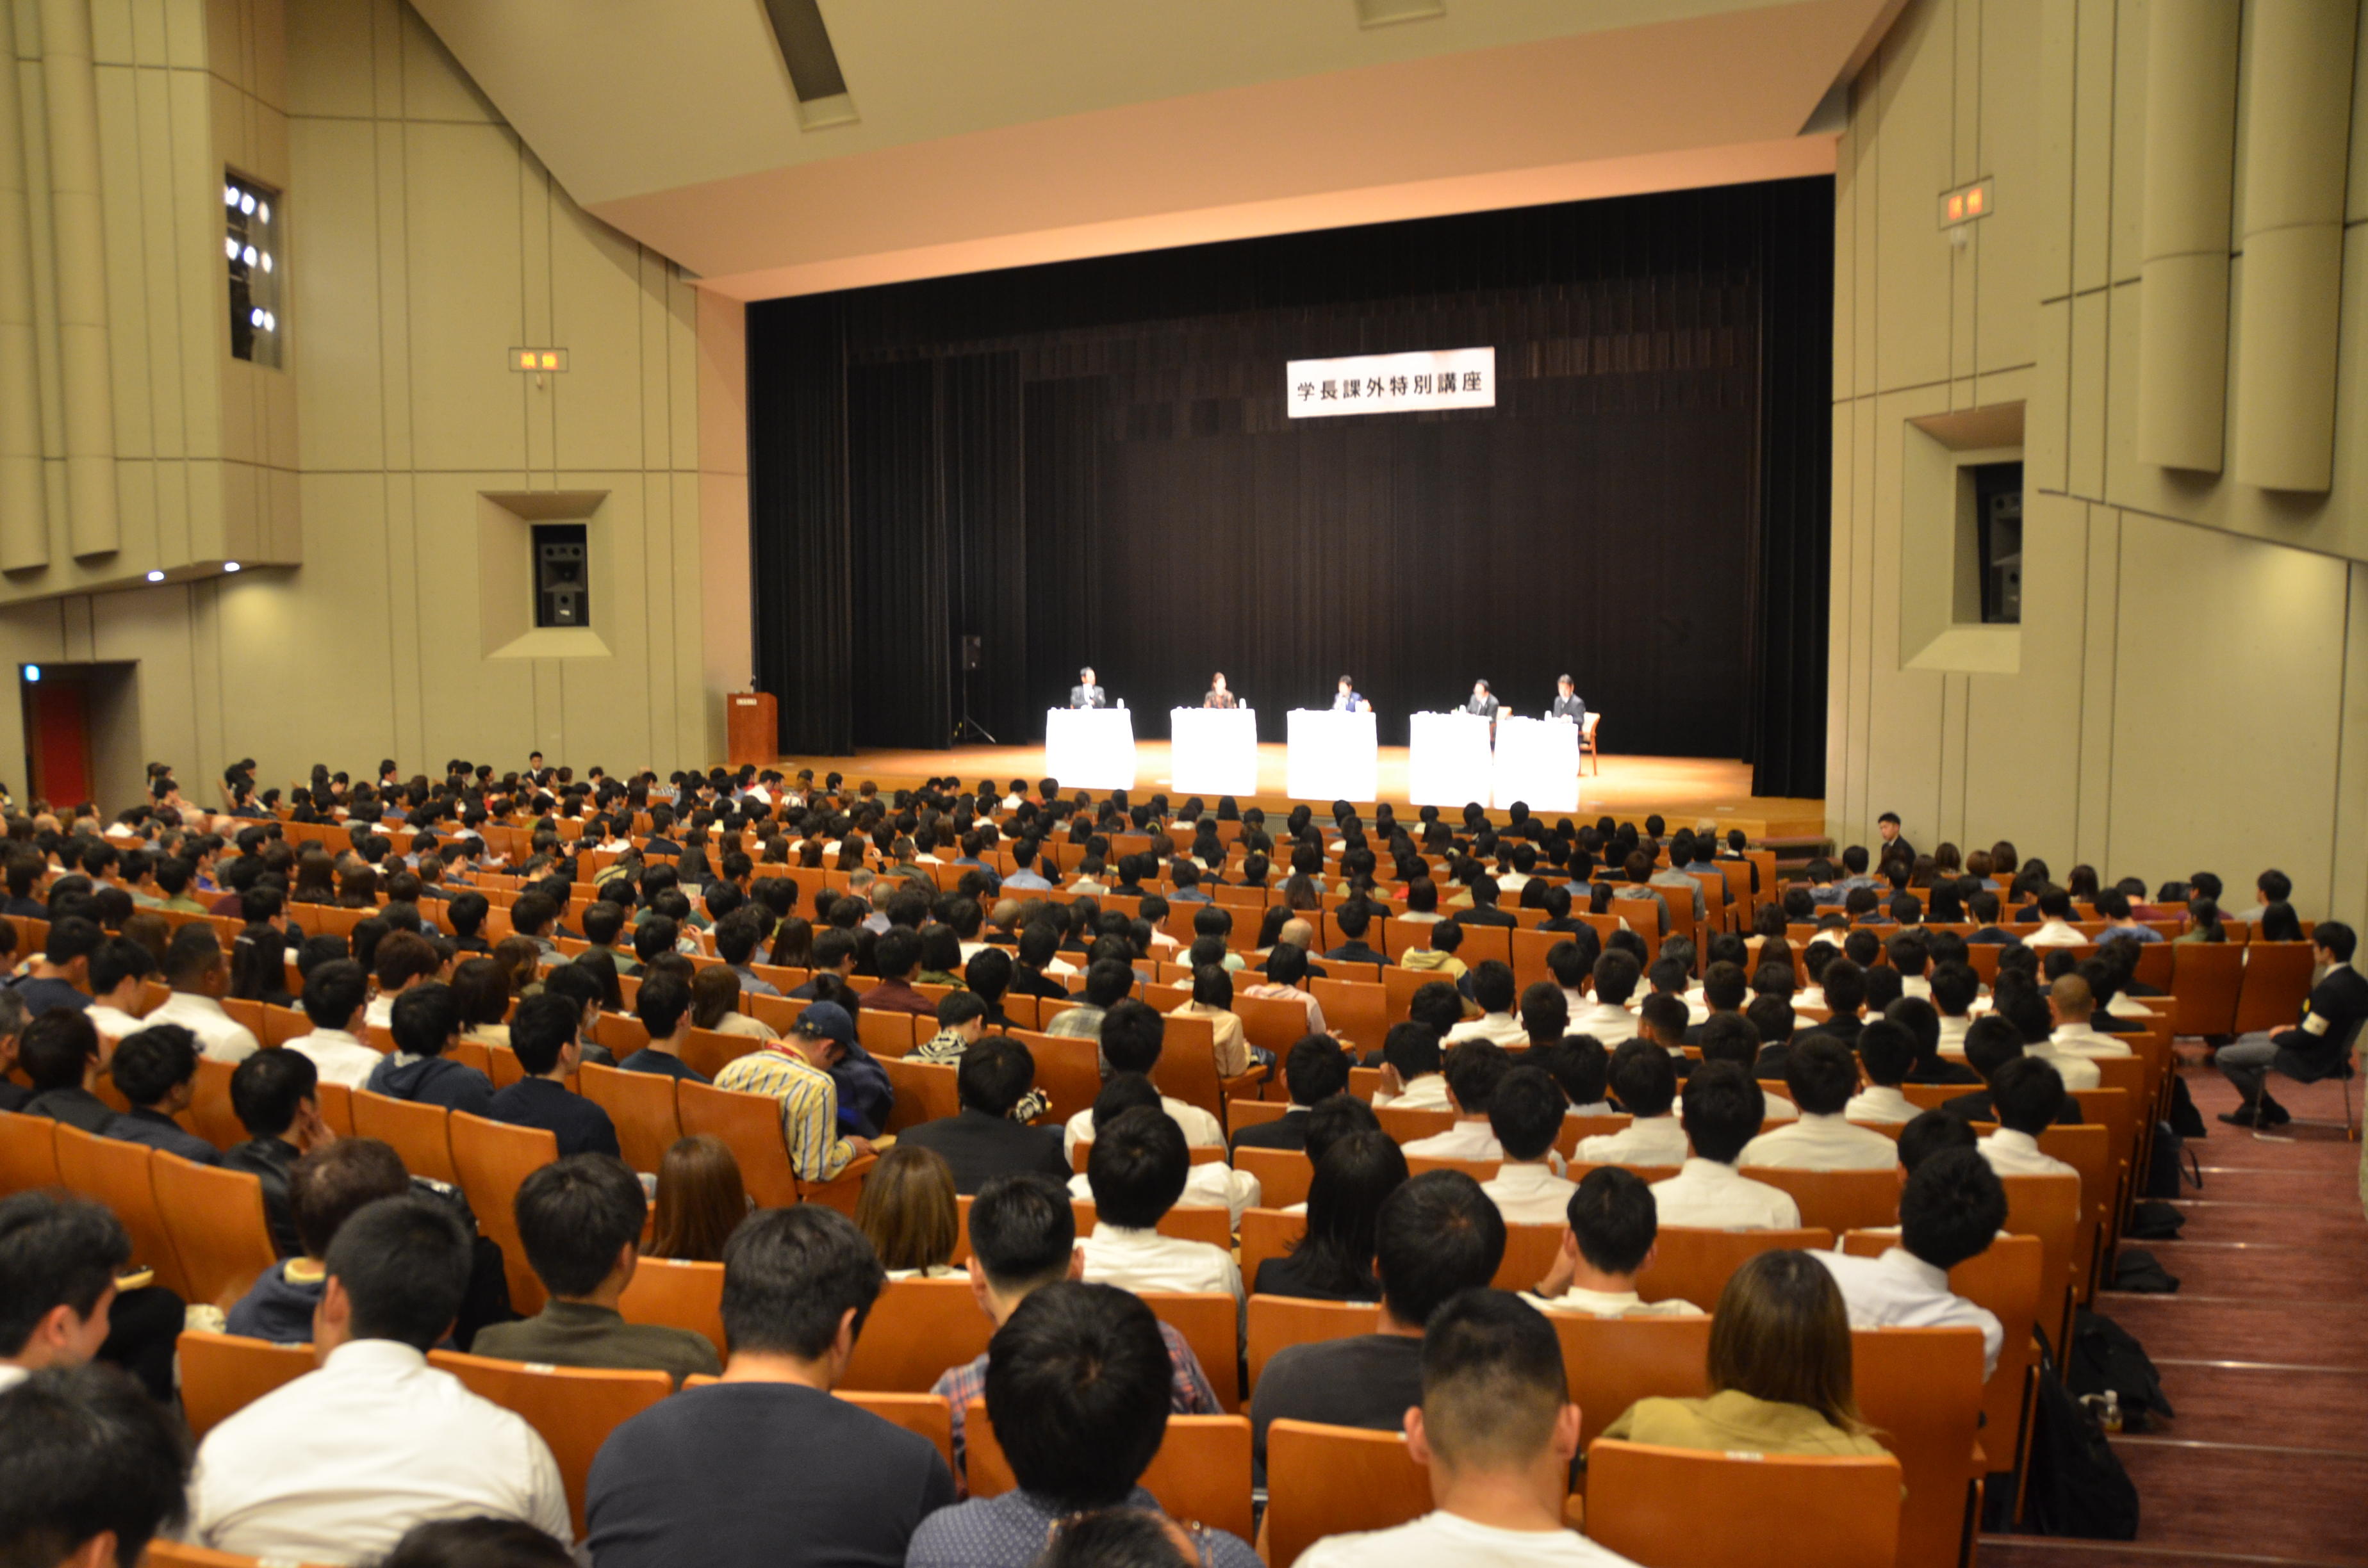 駒澤大学が学長課外特別講座「『ボランティアと未来の共生社会』について～東京2020オリンピック・パラリンピックと大学～」を開催 -- 東京2020参画プログラムの一環